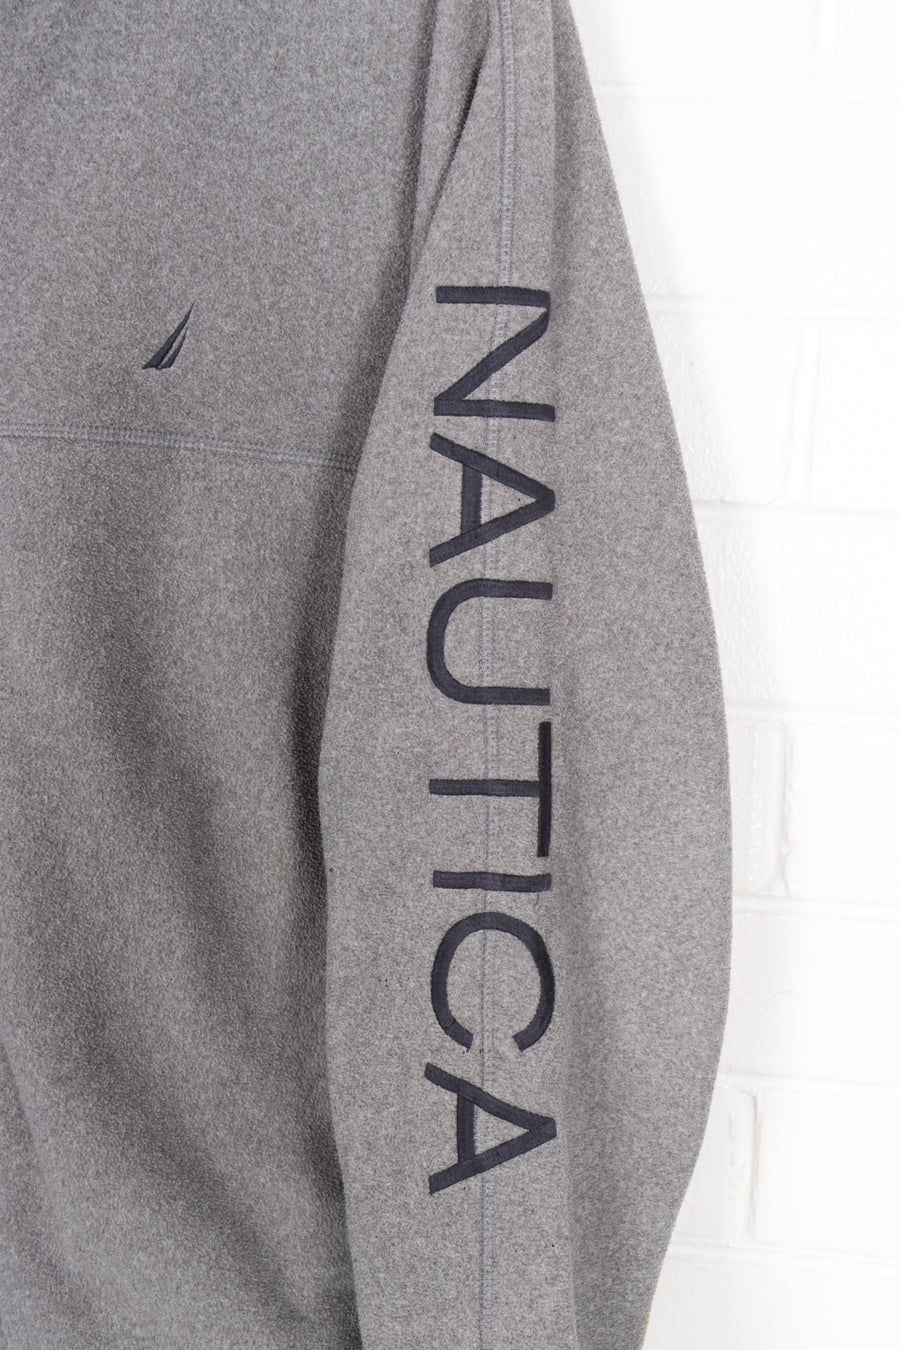 NAUTICA Embroidered Yellow & Grey Full Zip Fleece (XL)